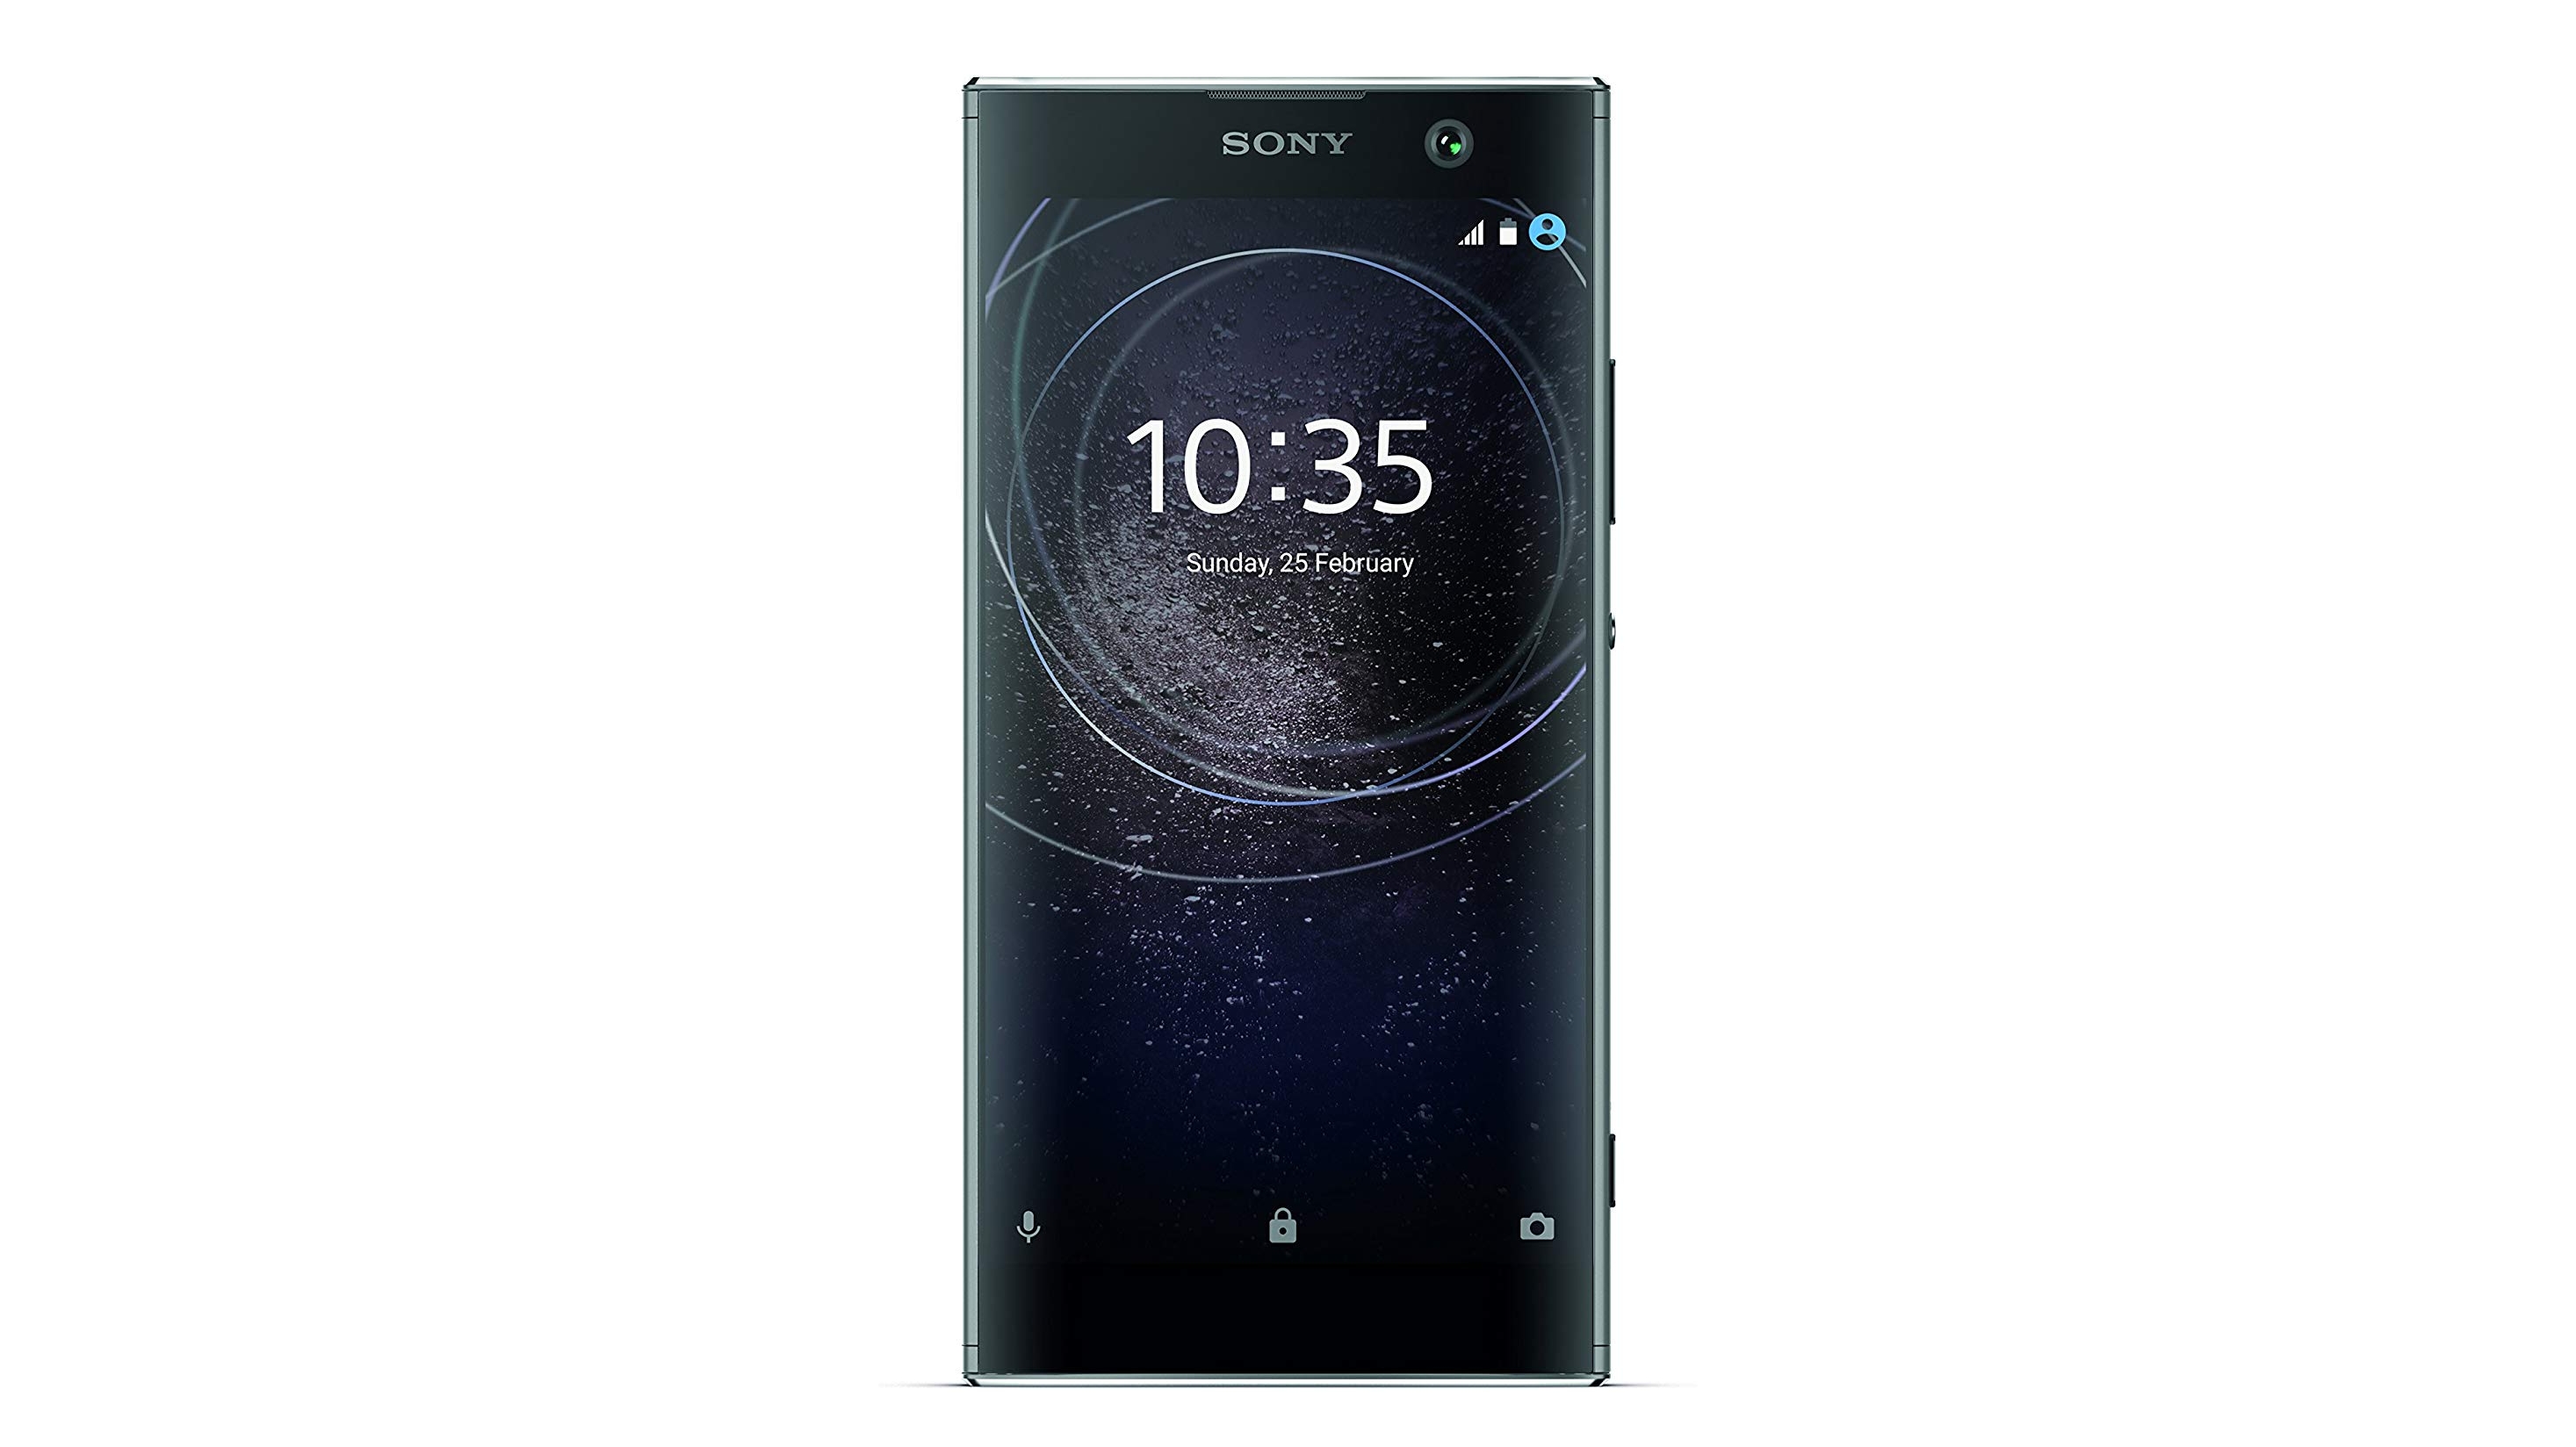 أفضل هواتف Sony لعام 2020: اعثر على هاتف Sony Xperia الذكي المناسب لك 7